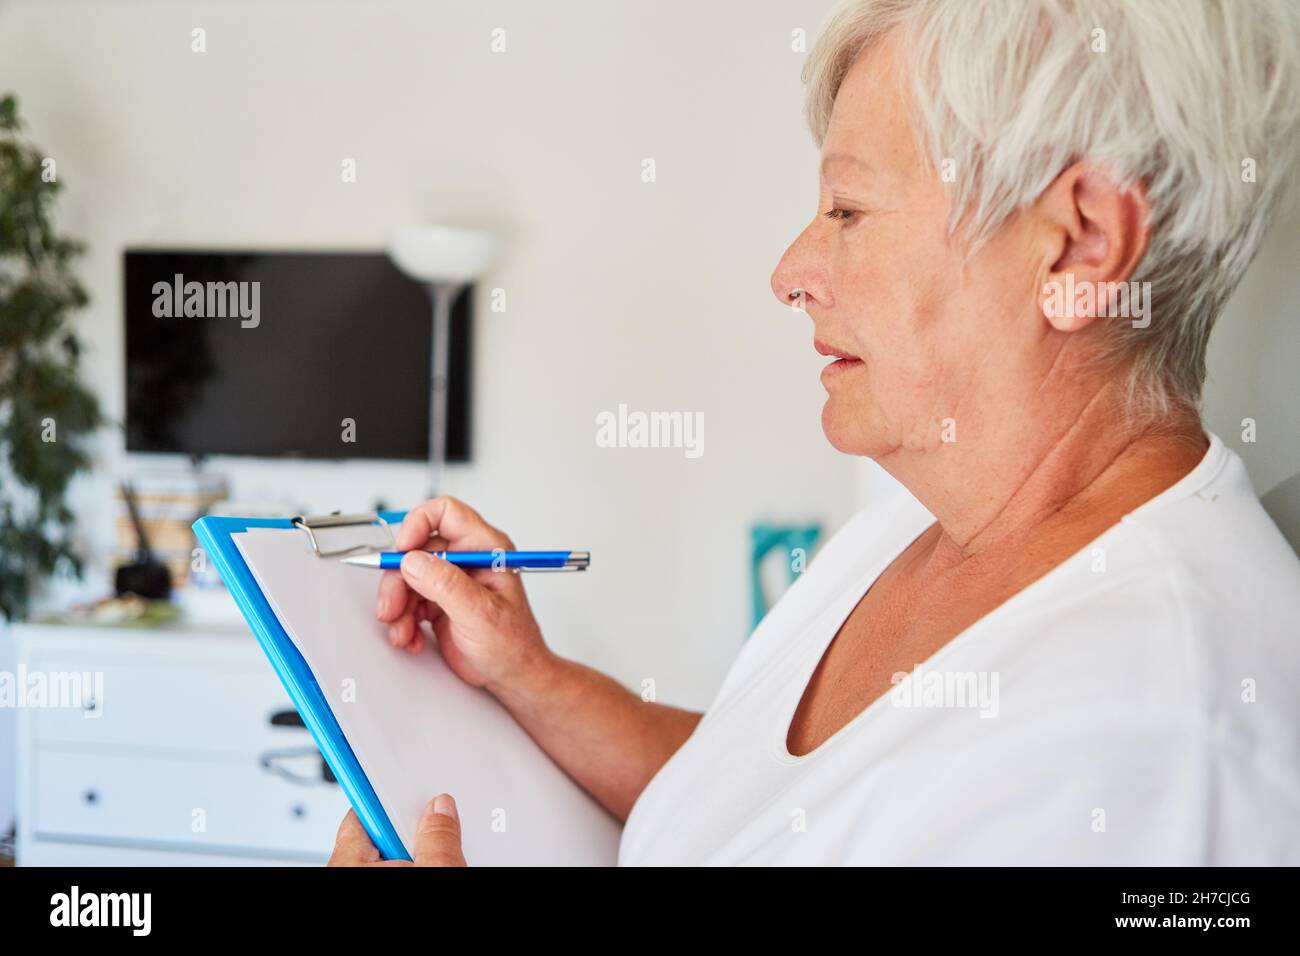 La supervisión del hogar utiliza una lista de verificación en el portapapeles para verificar la limpieza e higiene en el hogar de ancianos Foto de stock